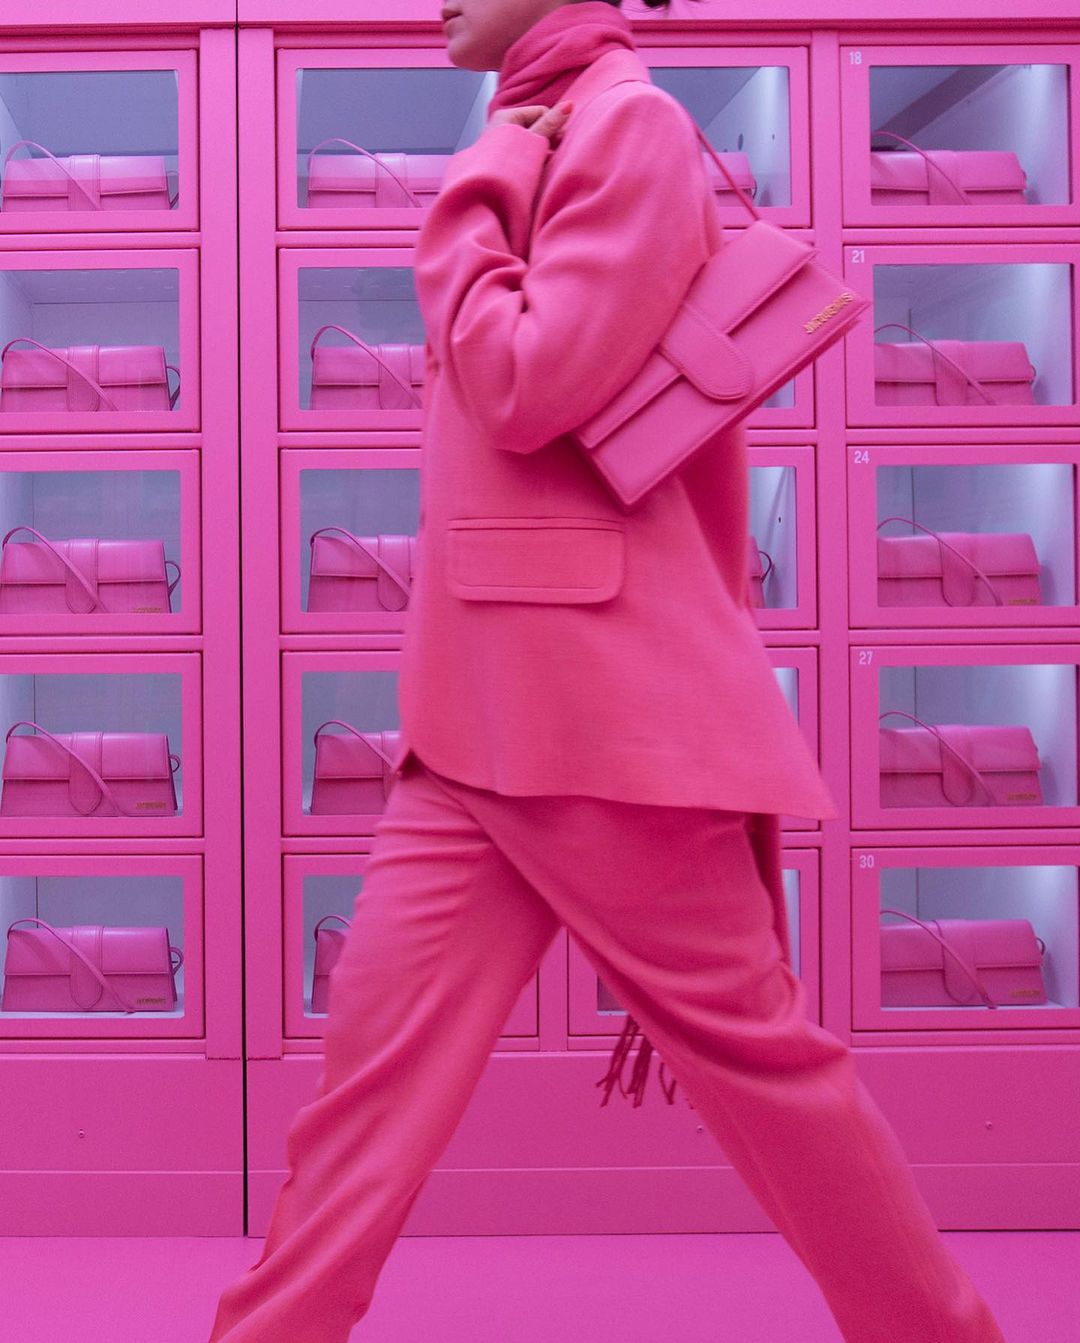 Що не так з новим рожевим поп-ап бутіком Jacquemus у Парижі-Фото.